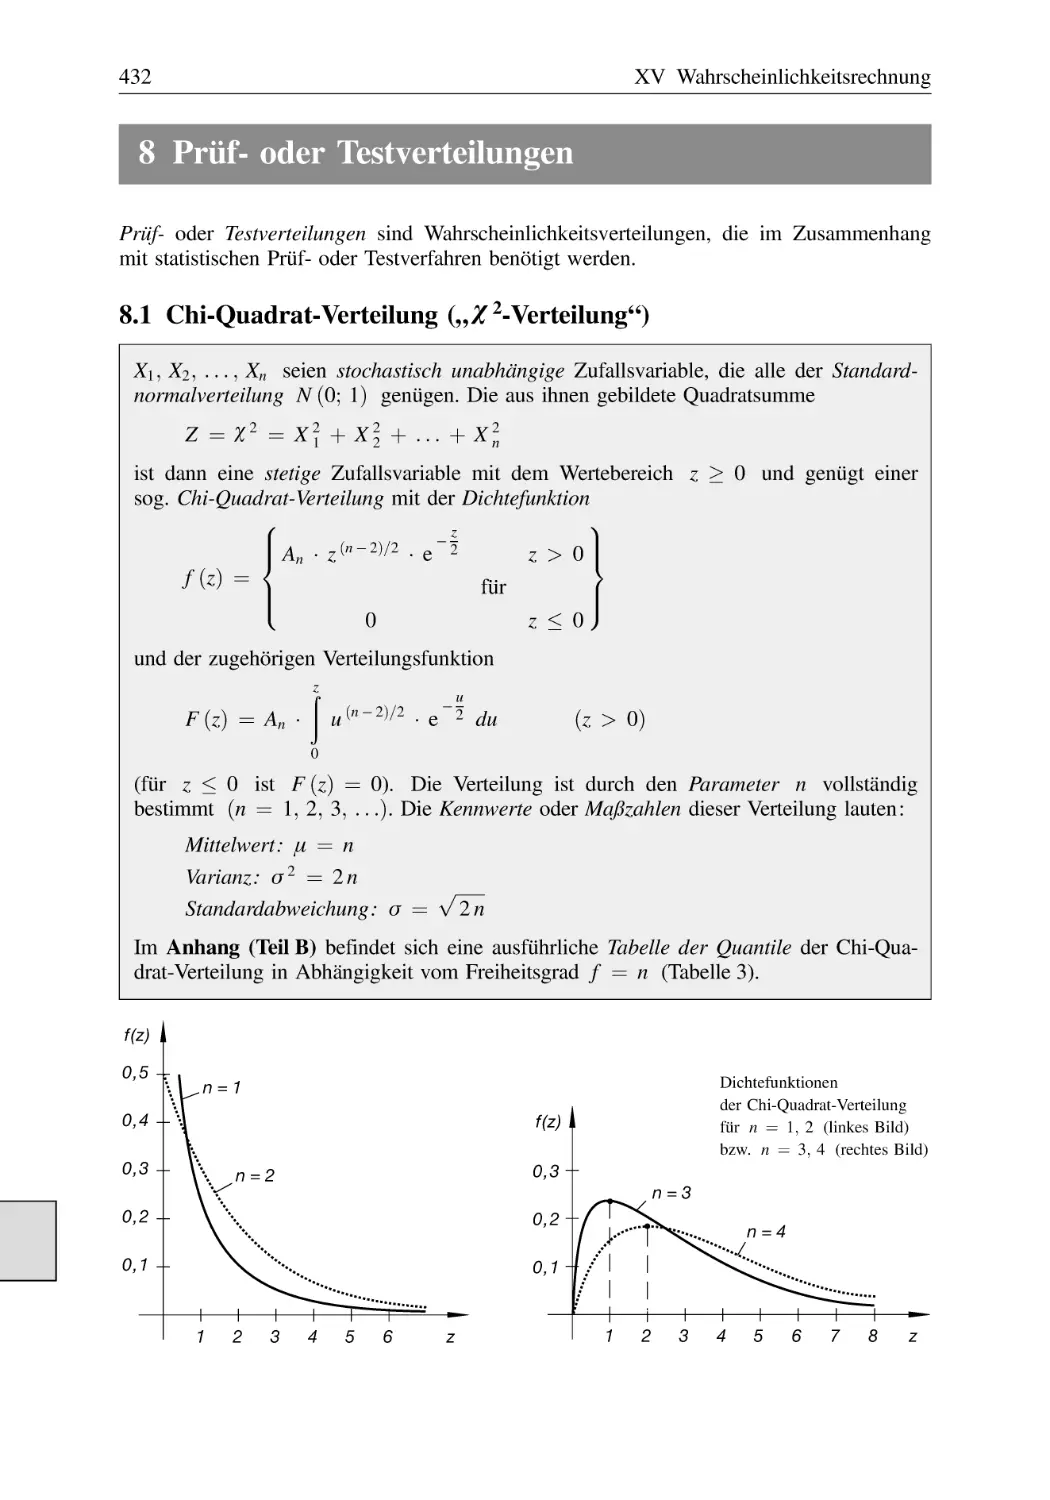 8 Prüf- oder Testverteilungen
8.1 Chi-Quadrat-Verteilung („χ²-Verteilung“)